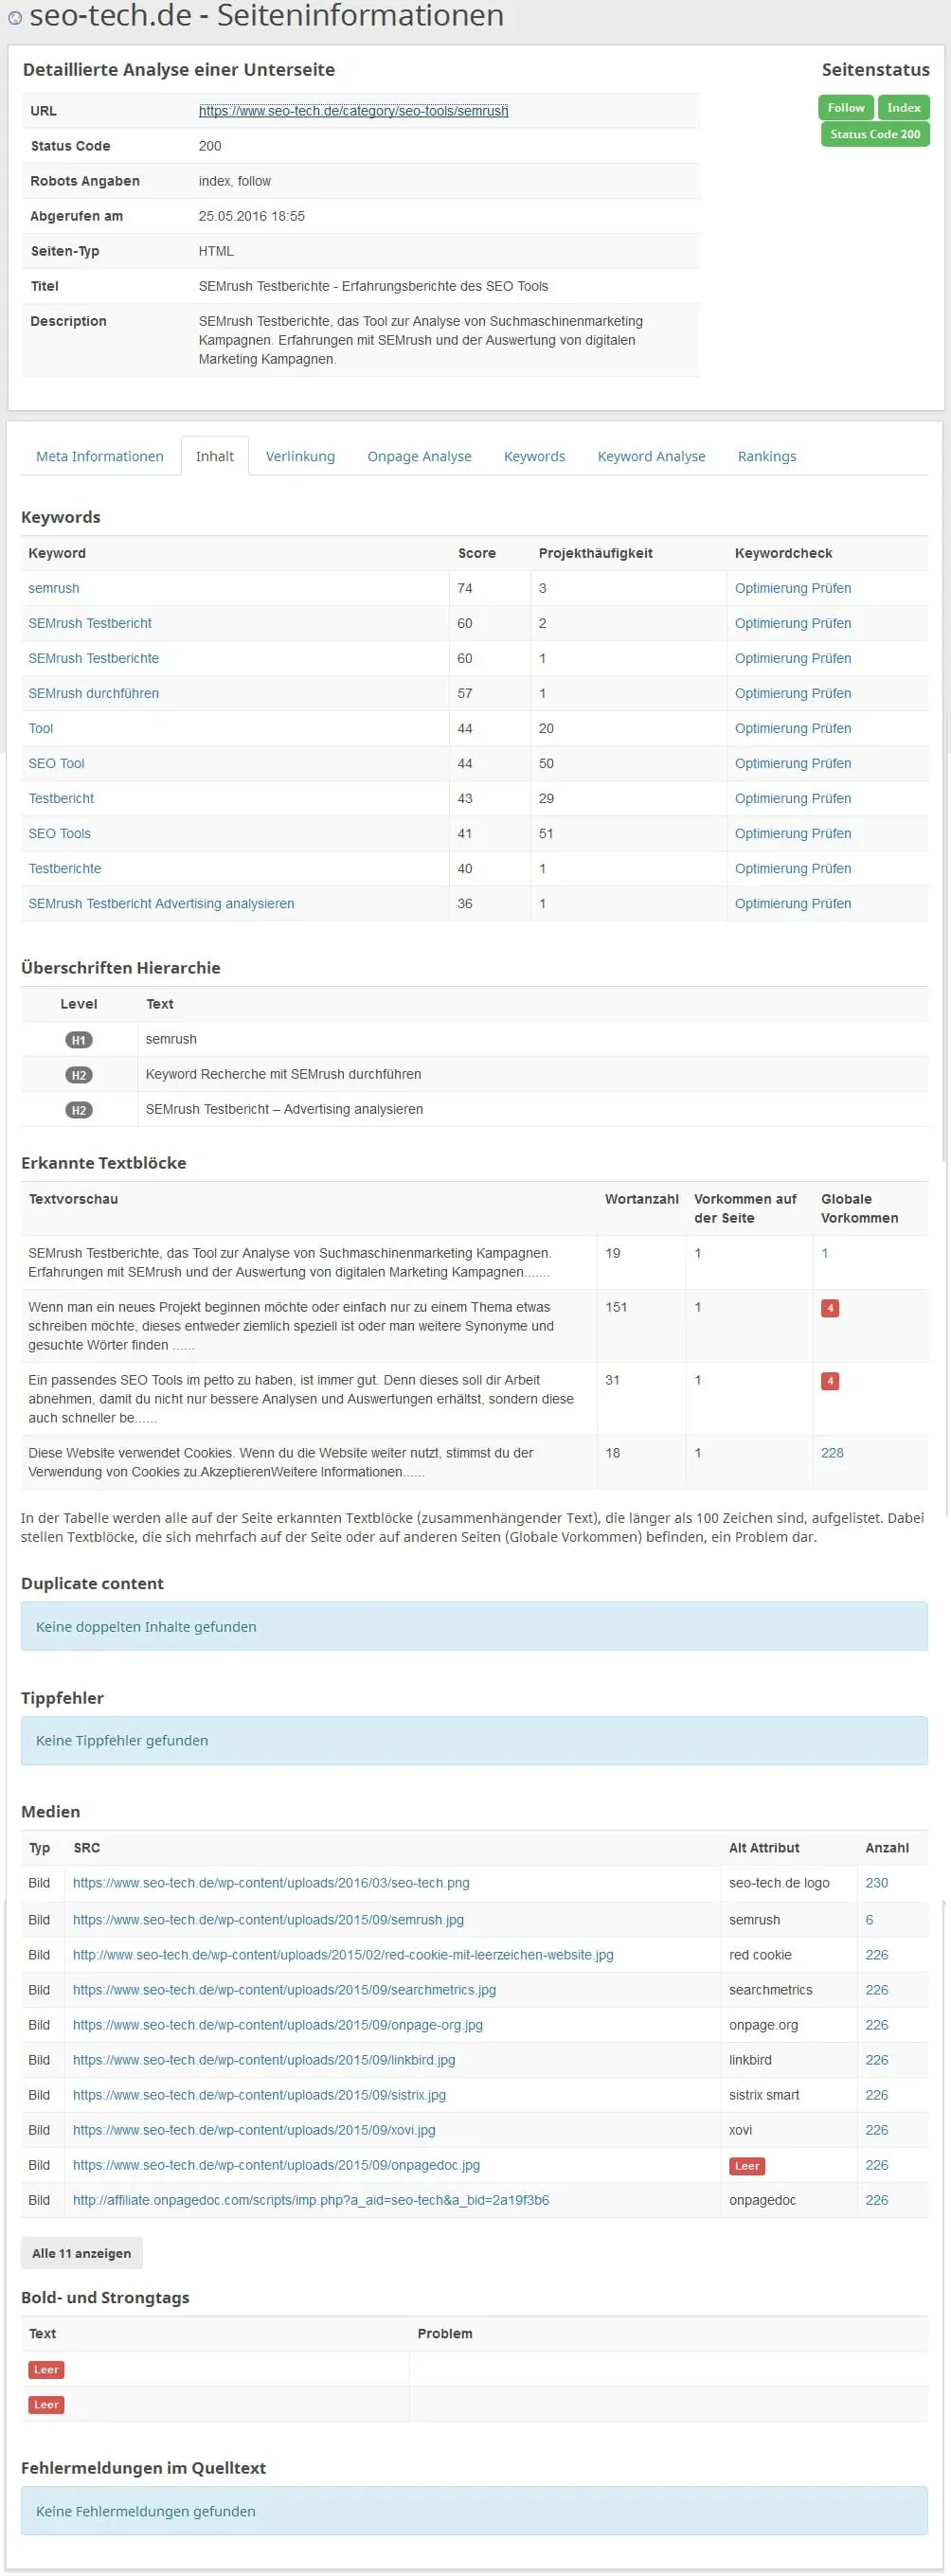 seobility Seiteninformationen Inhalt und keywords by seo-tech.de 